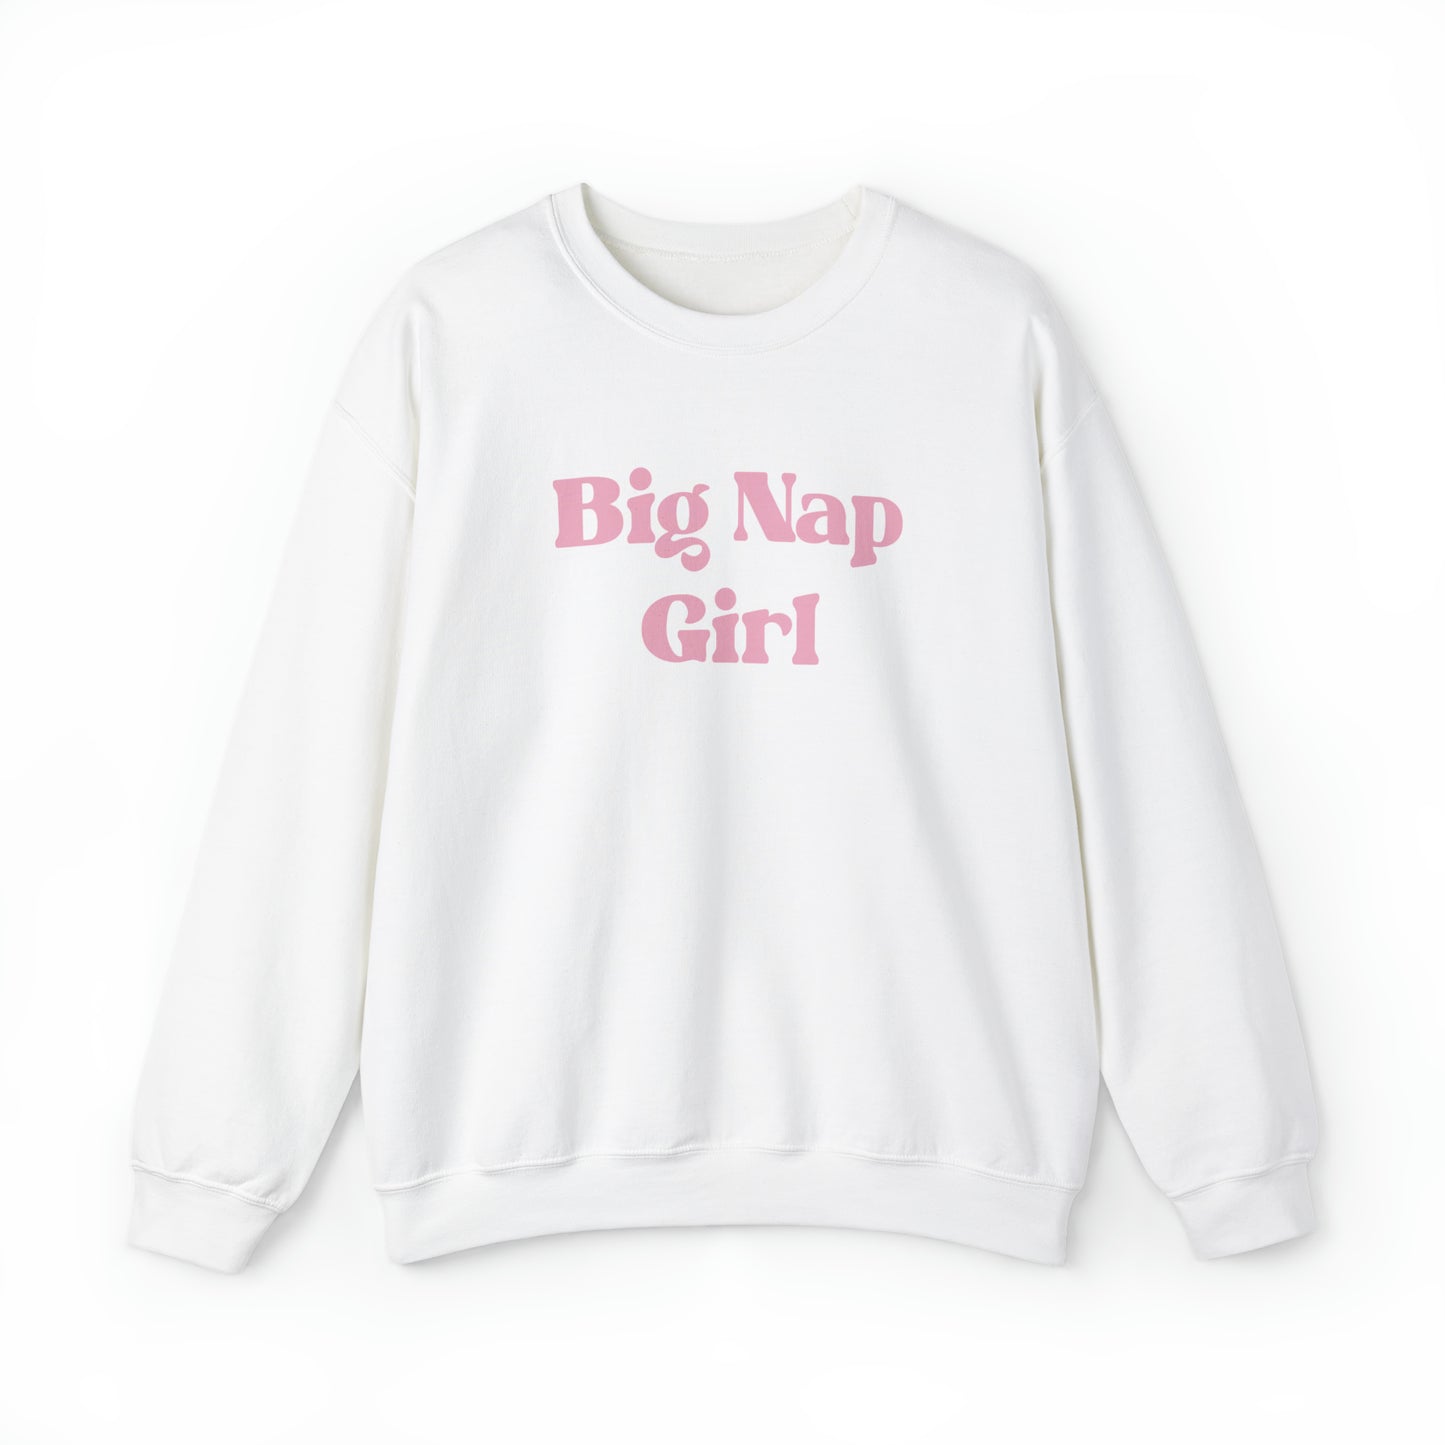 Big Nap Girl Crewneck Sweatshirt